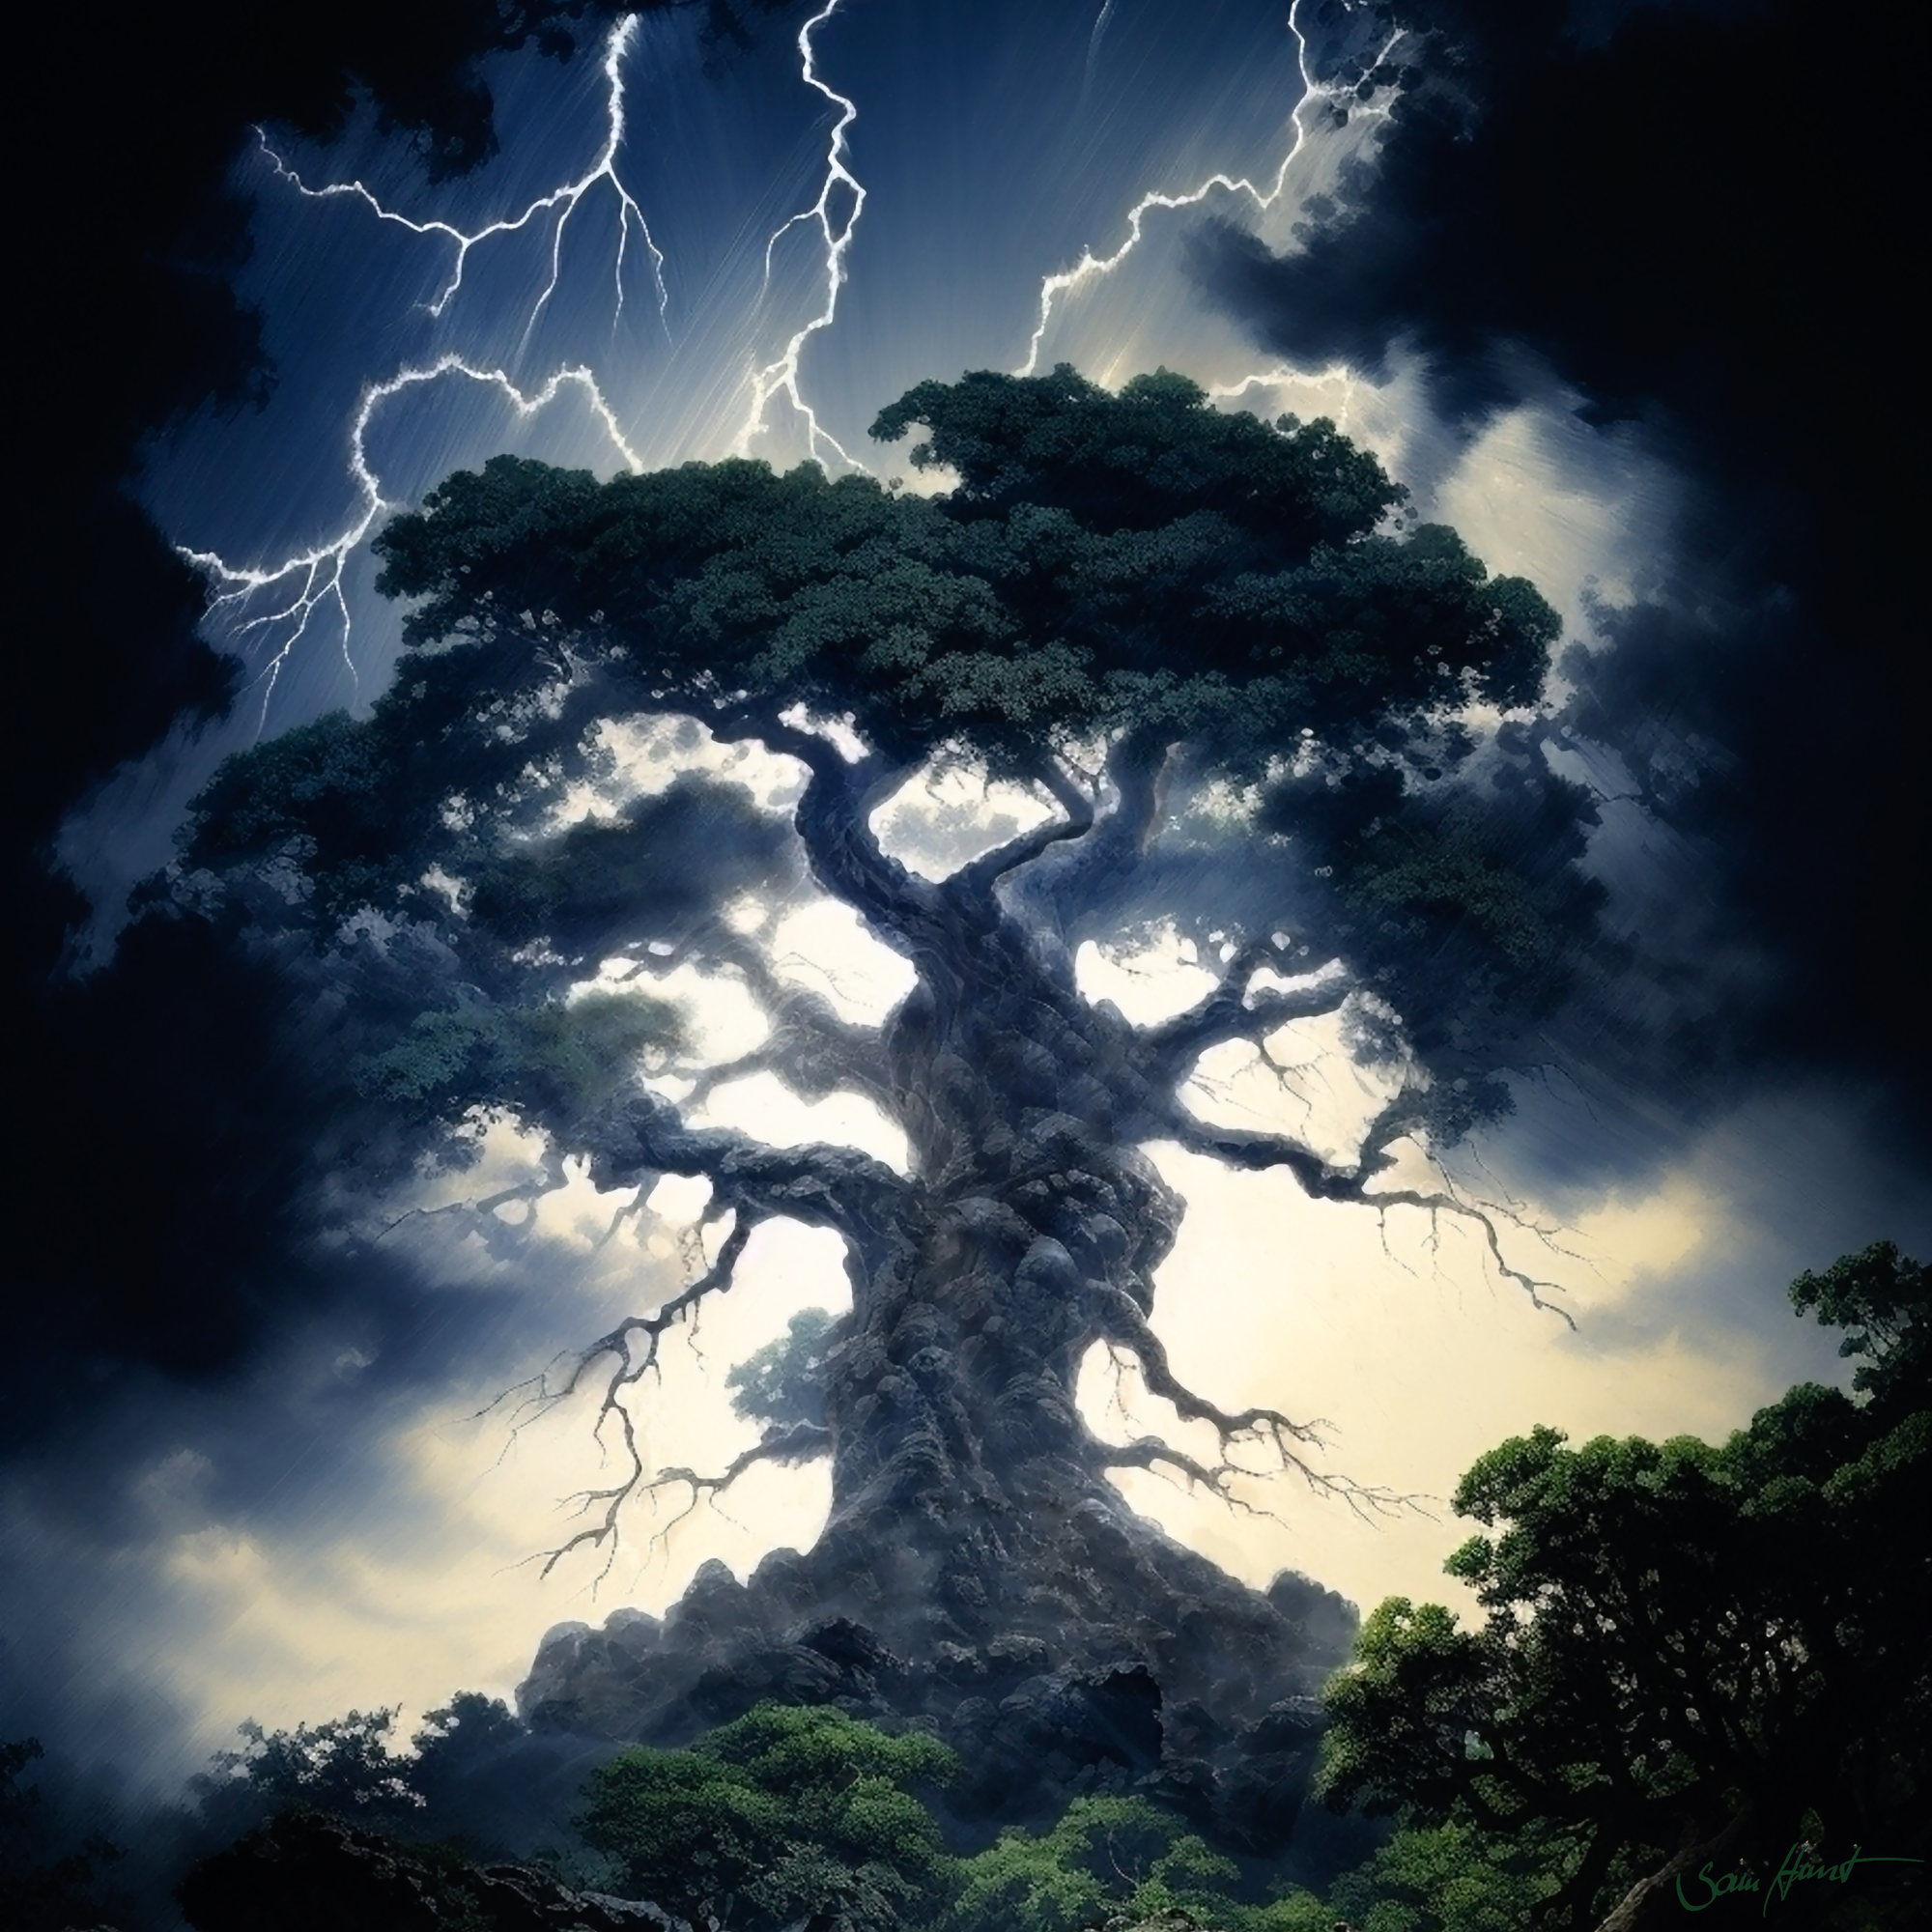 Tree In Lightning Storm